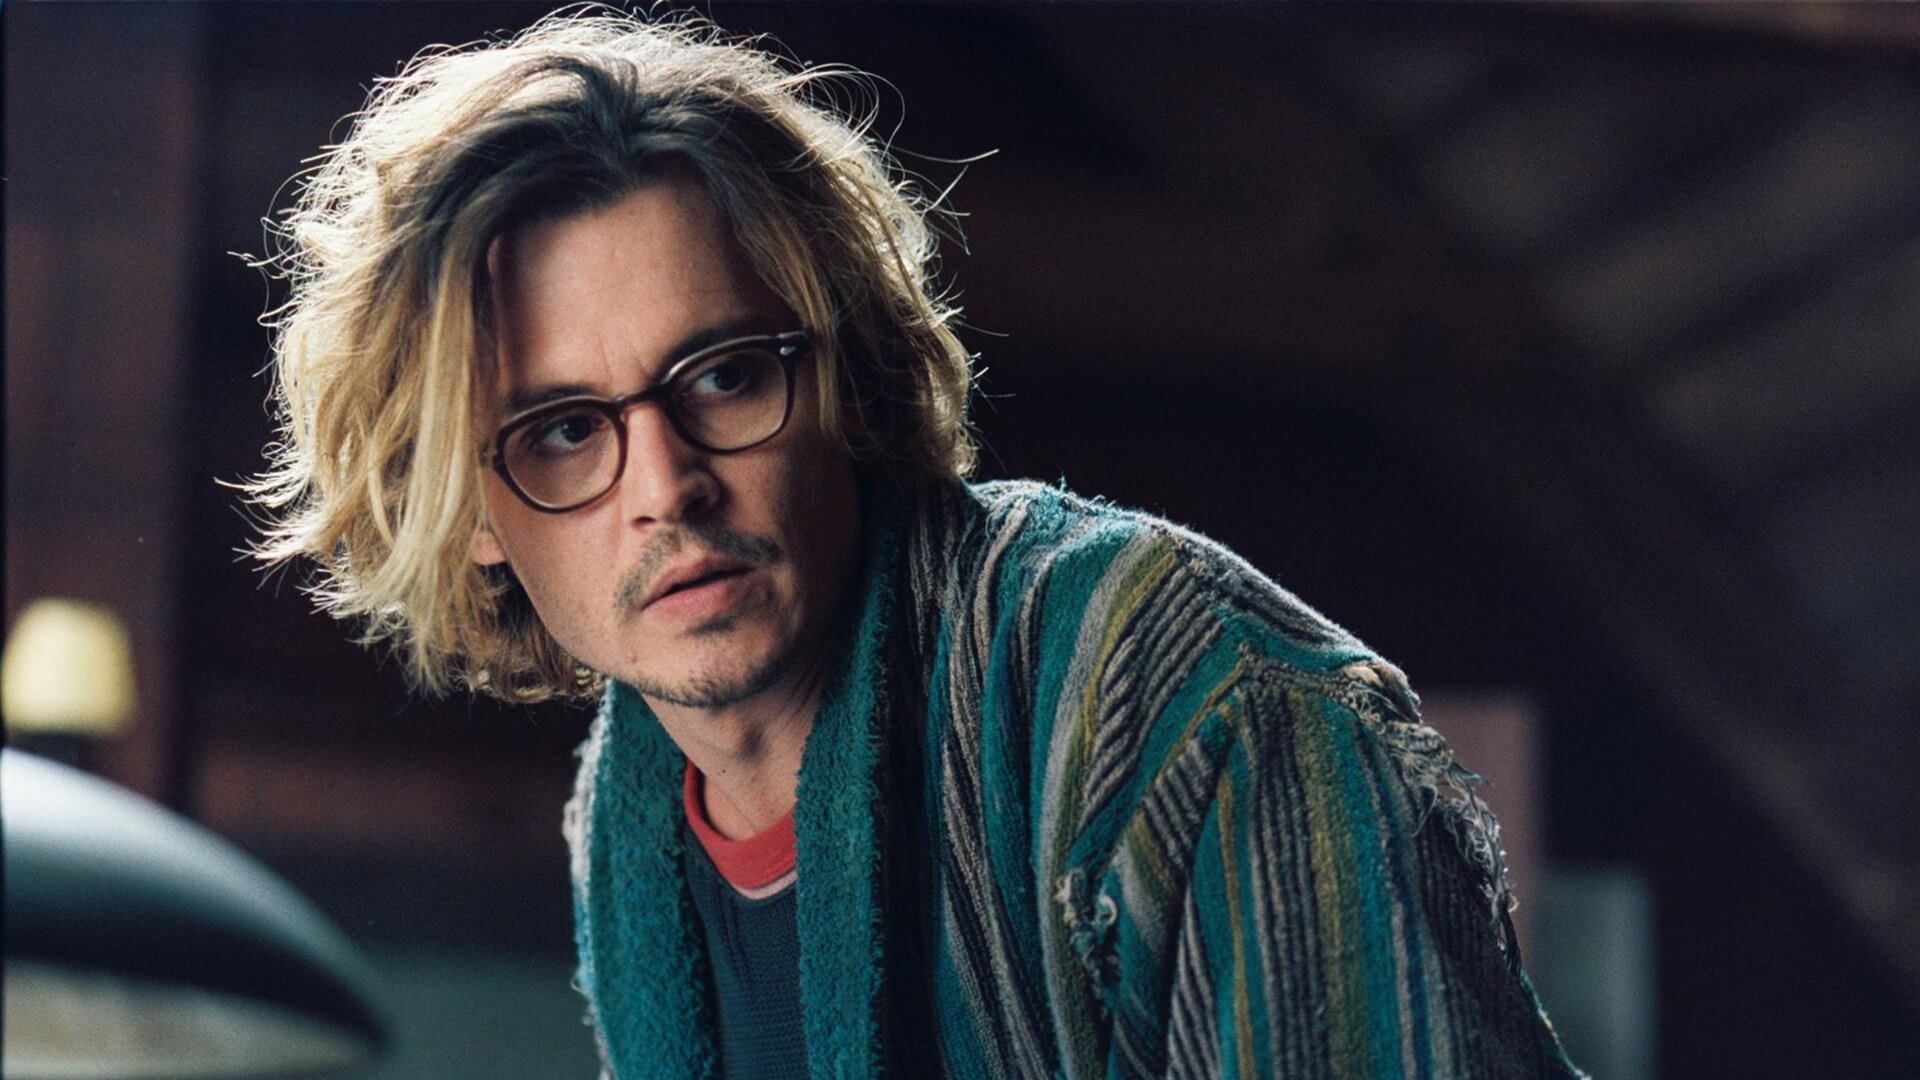 Beetlejuice 2: Is Johnny Depp in the Movie - Rumors Debunked